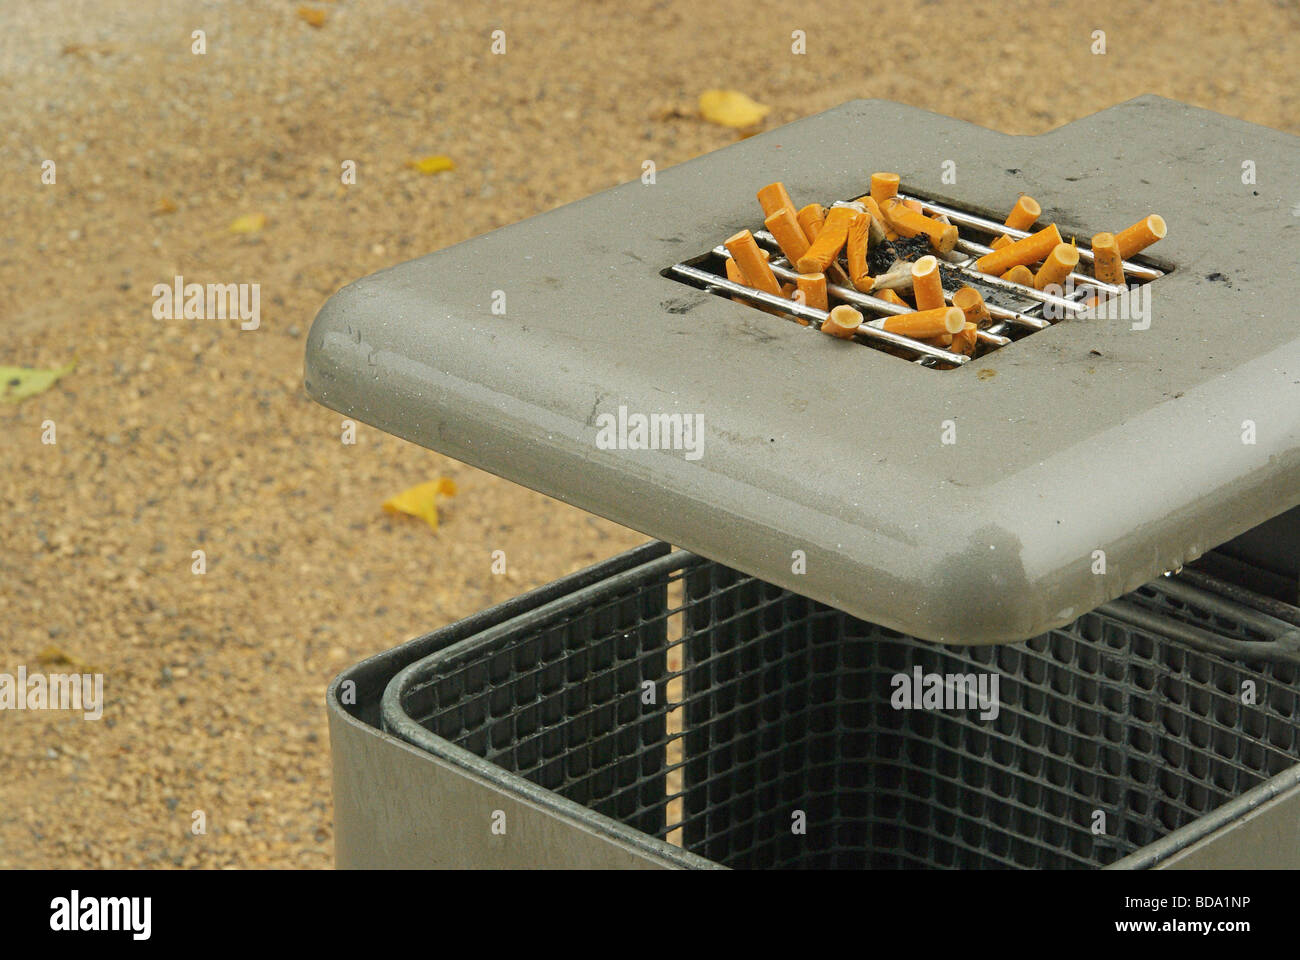 Zigarette cigarette 02 Stock Photo